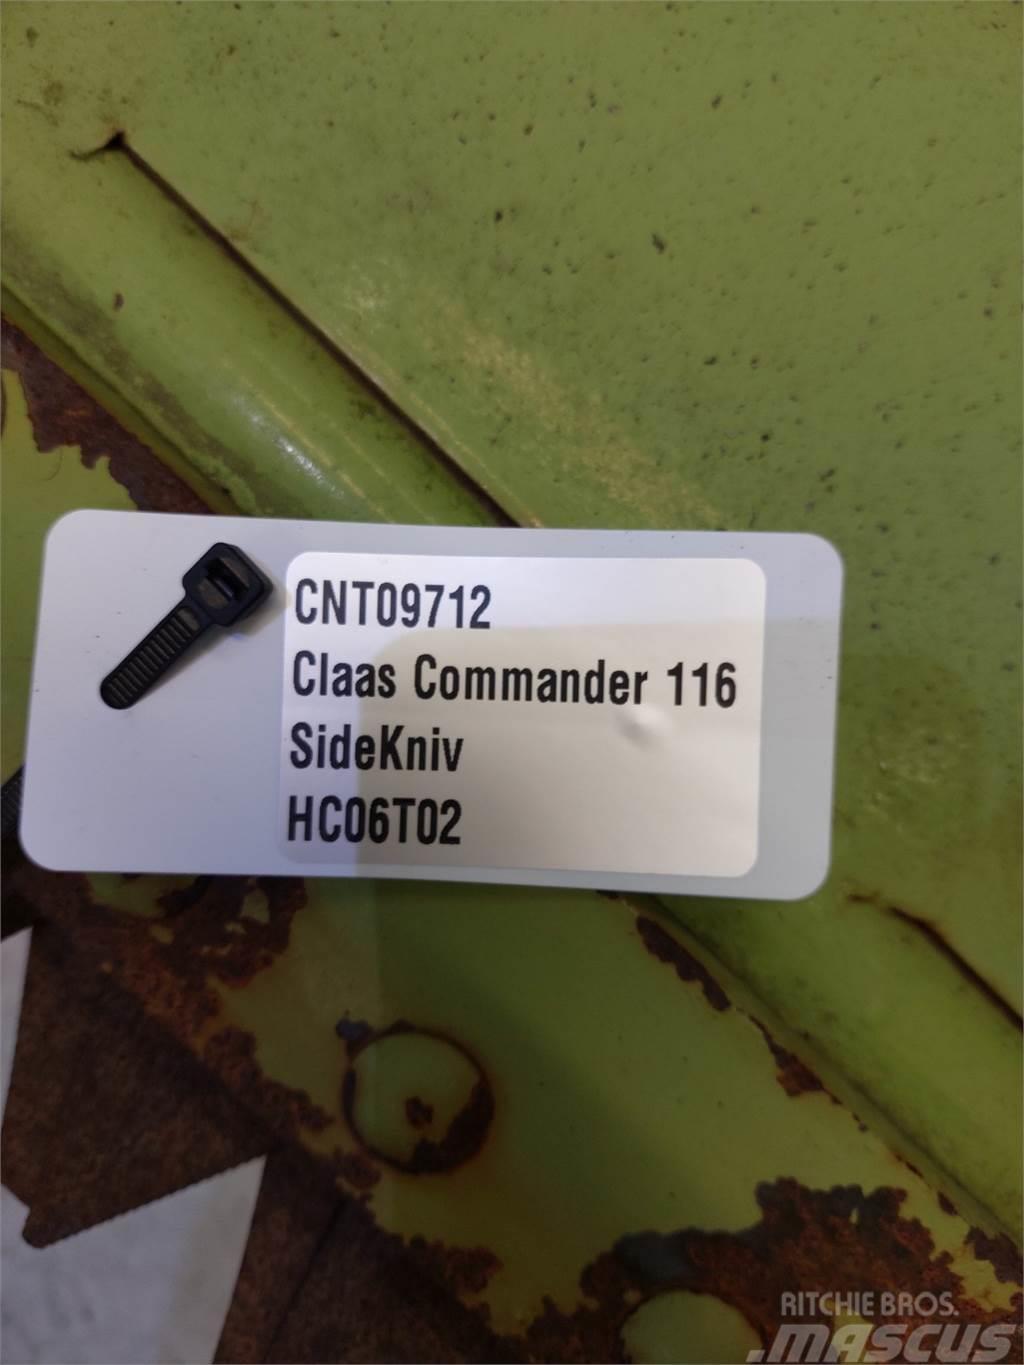 CLAAS Commandor 116 Combine harvester spares & accessories